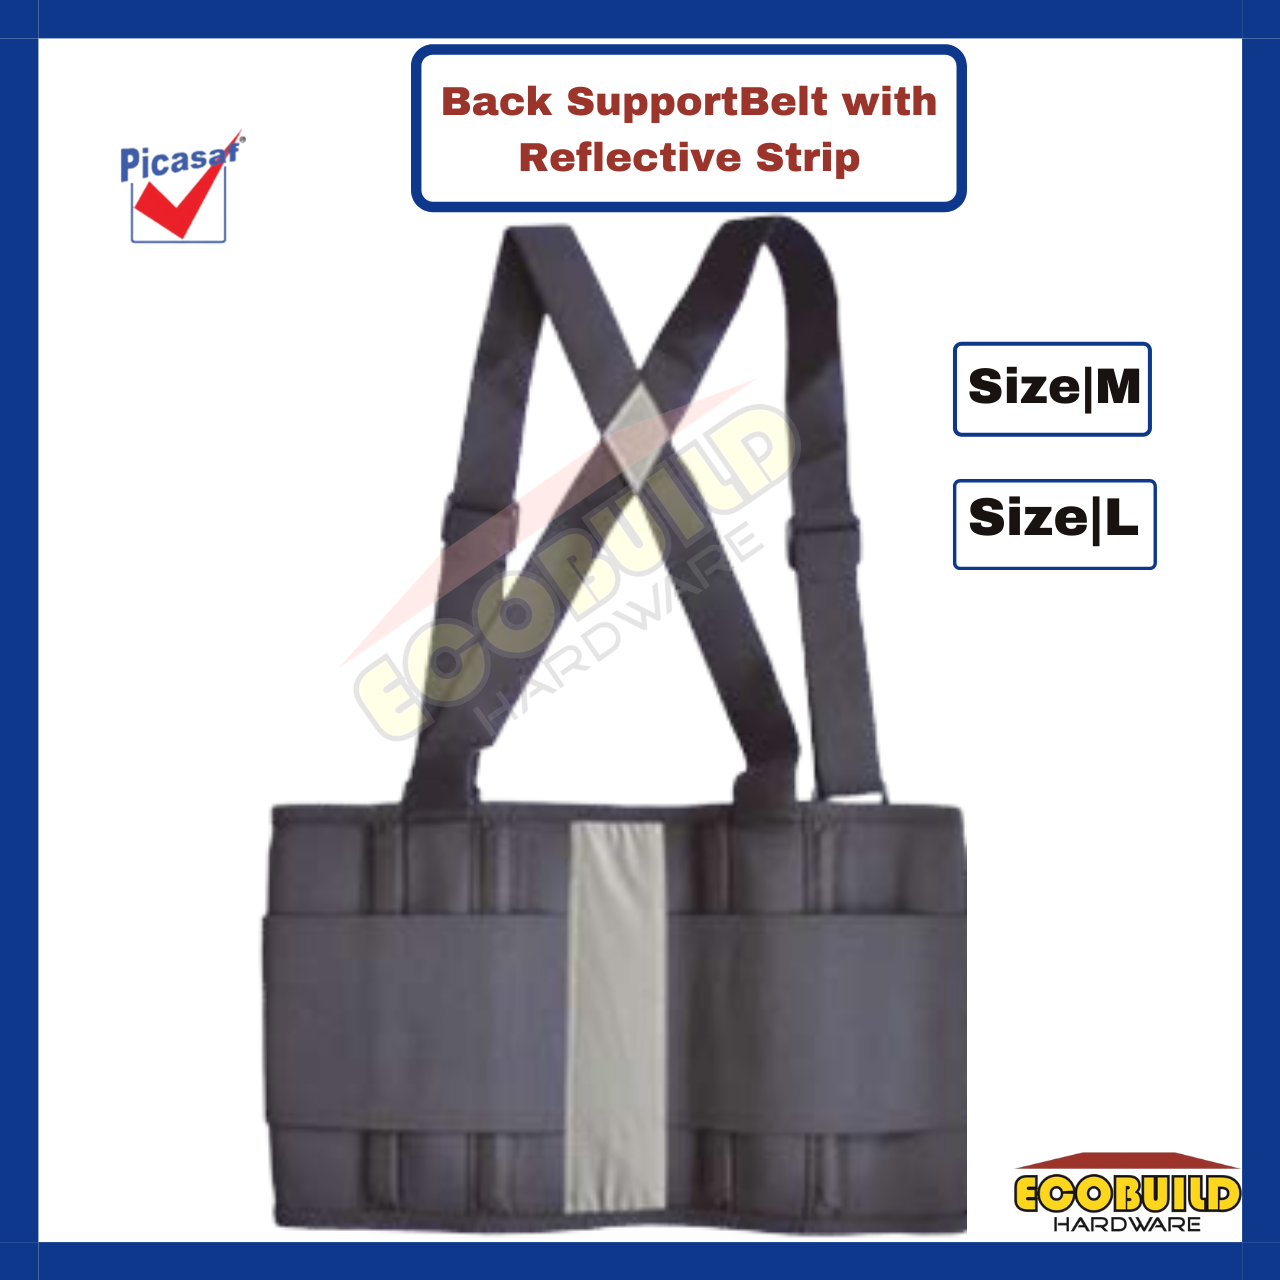 [Picasaf] Back Support Belt with Reflective Strip